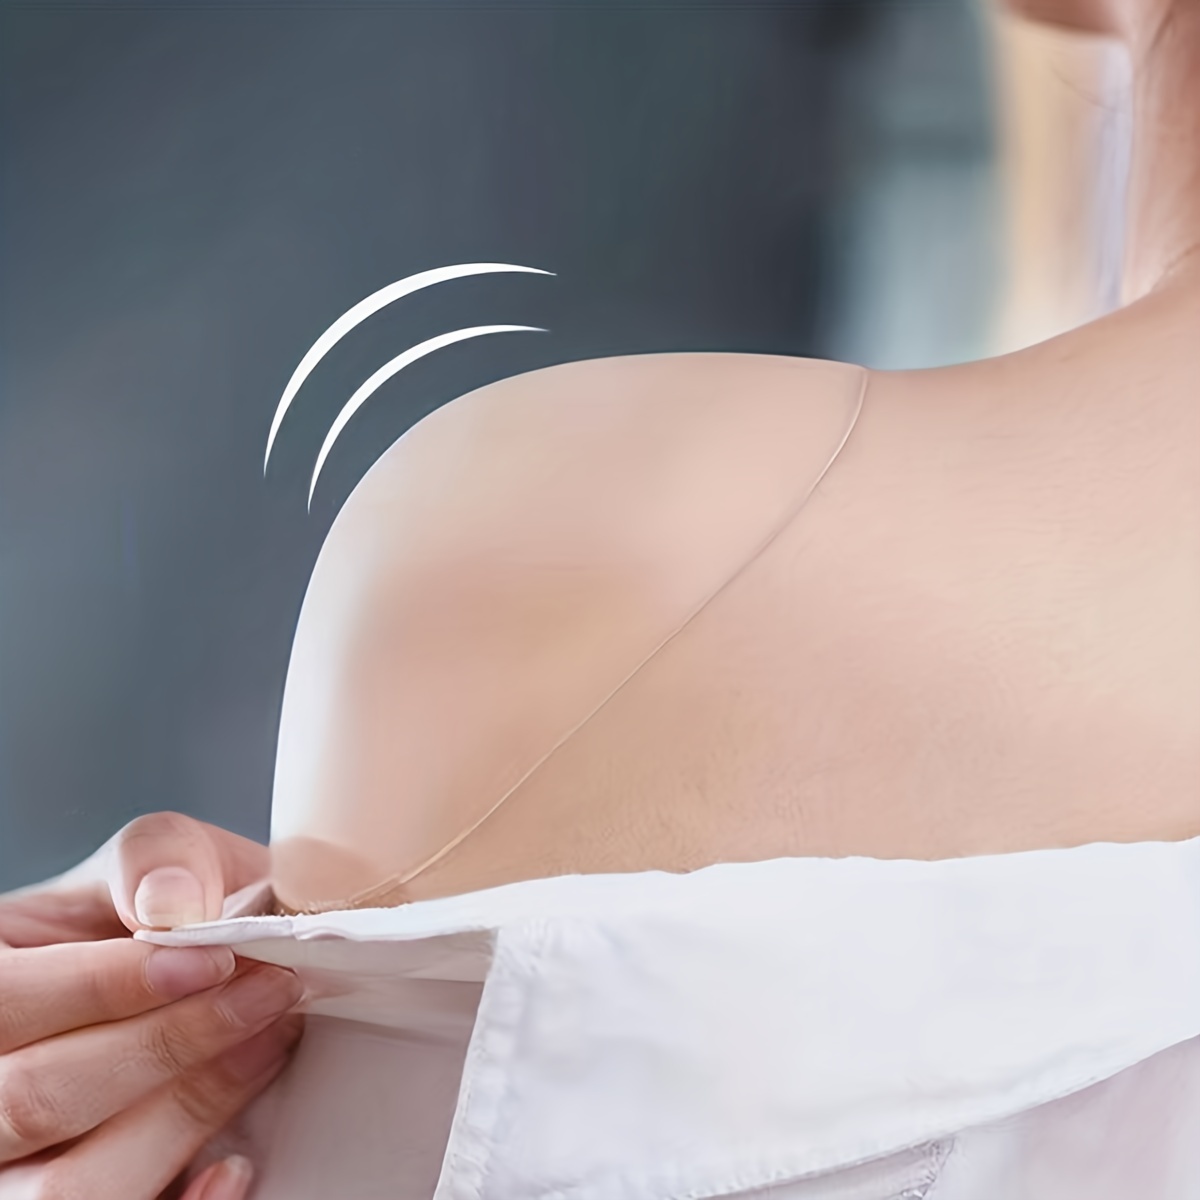 100% Silicone Bra Accessories Non-slip Shoulder Bra Strap Pads For Women  2pcs